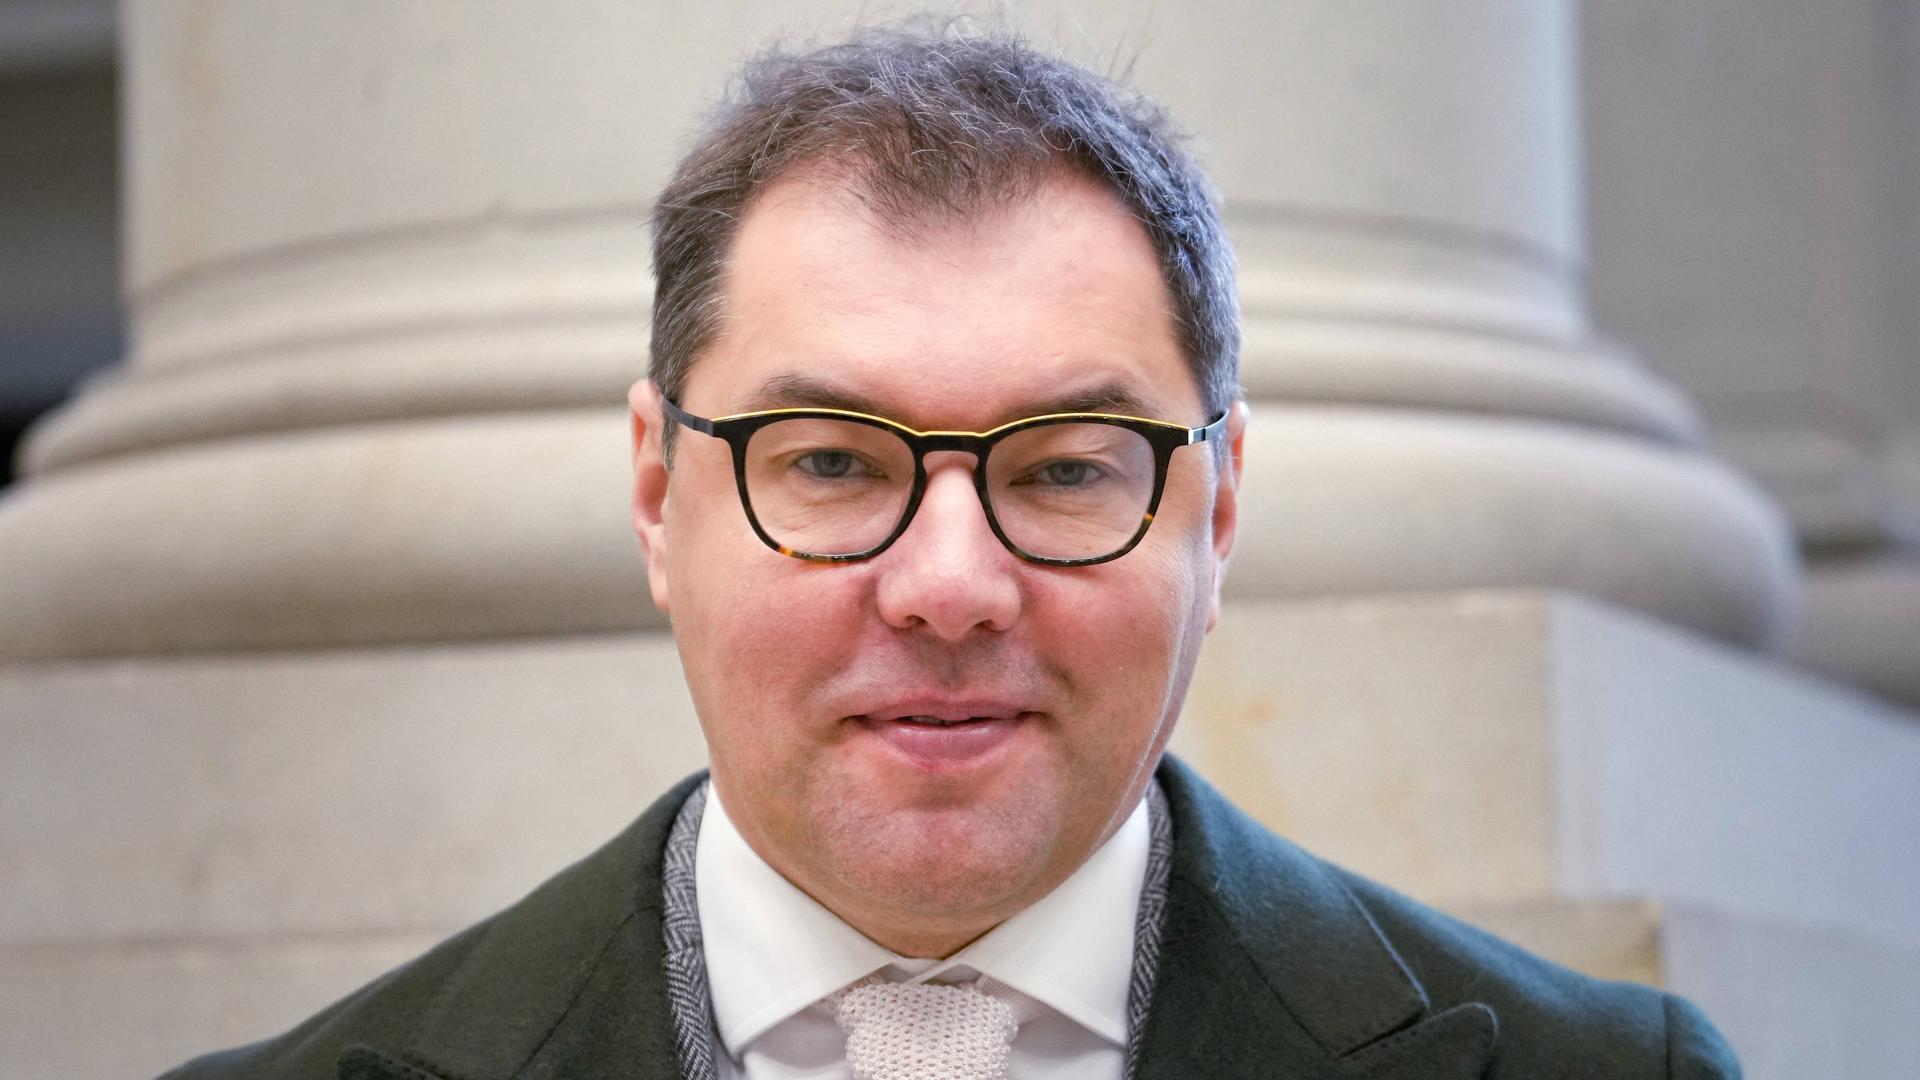 Porträt von Oleksii Makeiev, dem Botschafter der Ukraine in Berlin. Er trägt Anzug, einen Mantel und eine Brille und schaut geradeaus in die Kamera.